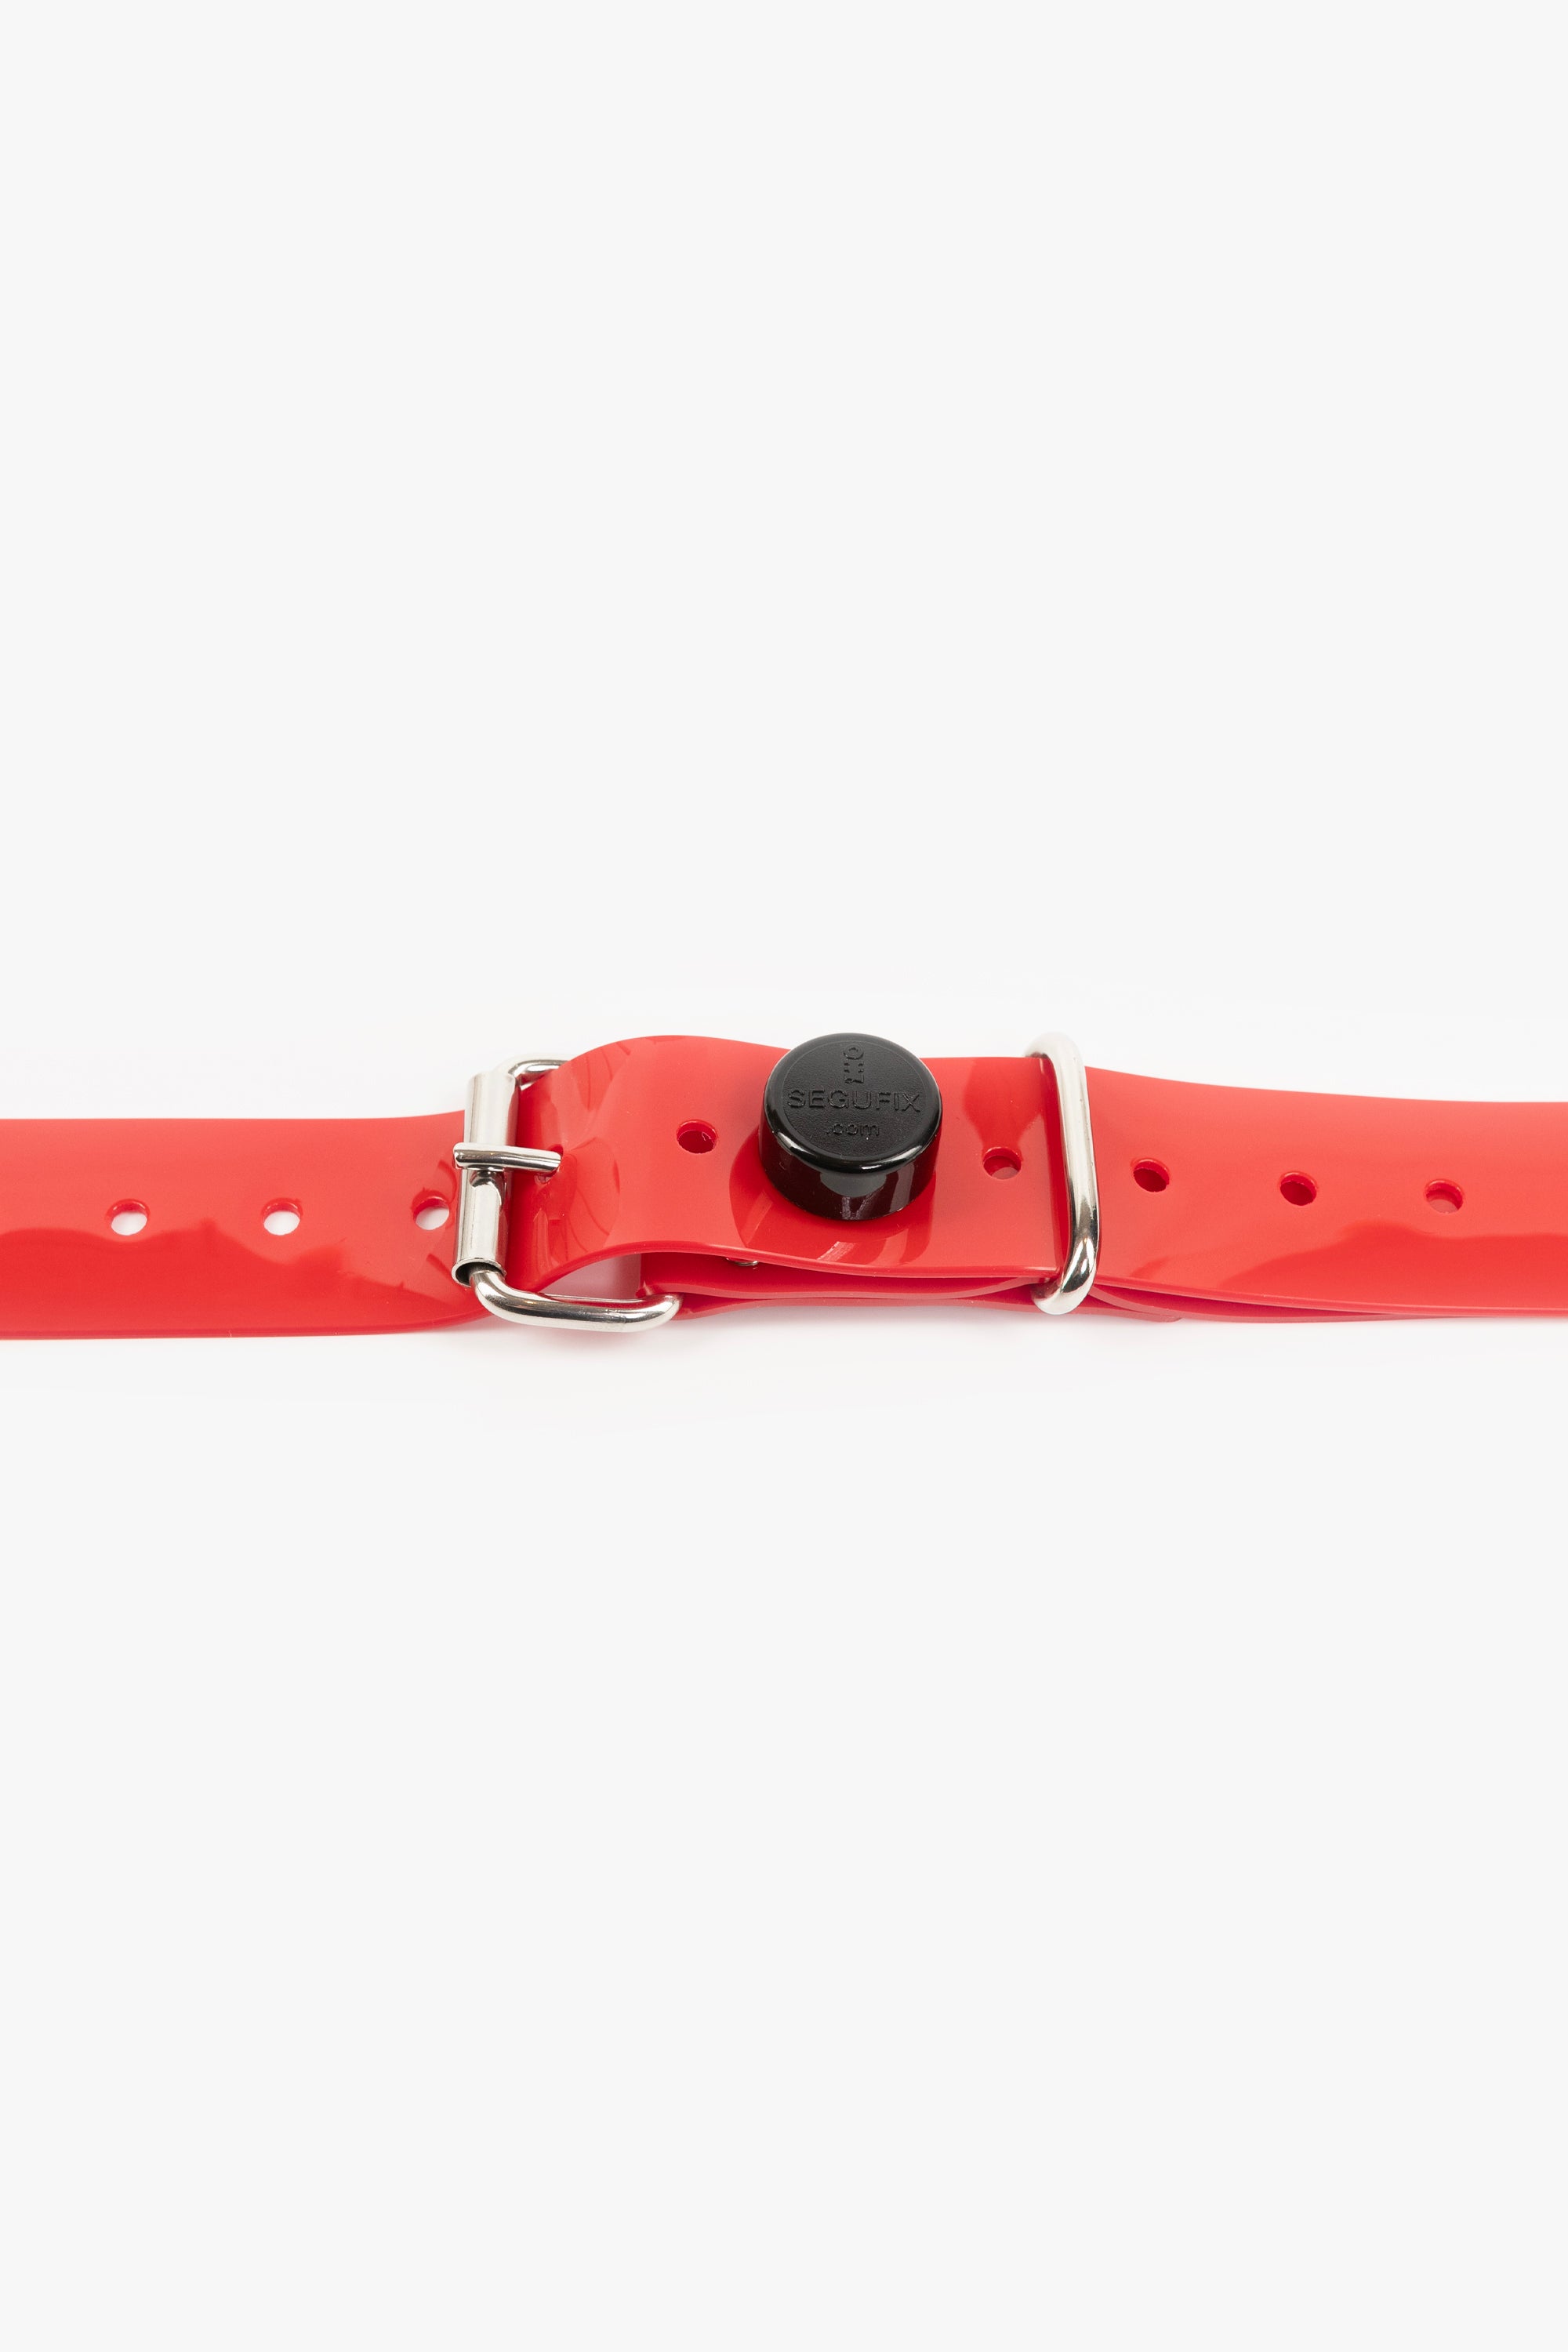 Bondage PVC strap lockable segufix 40 mm, different lengths, red/chrome